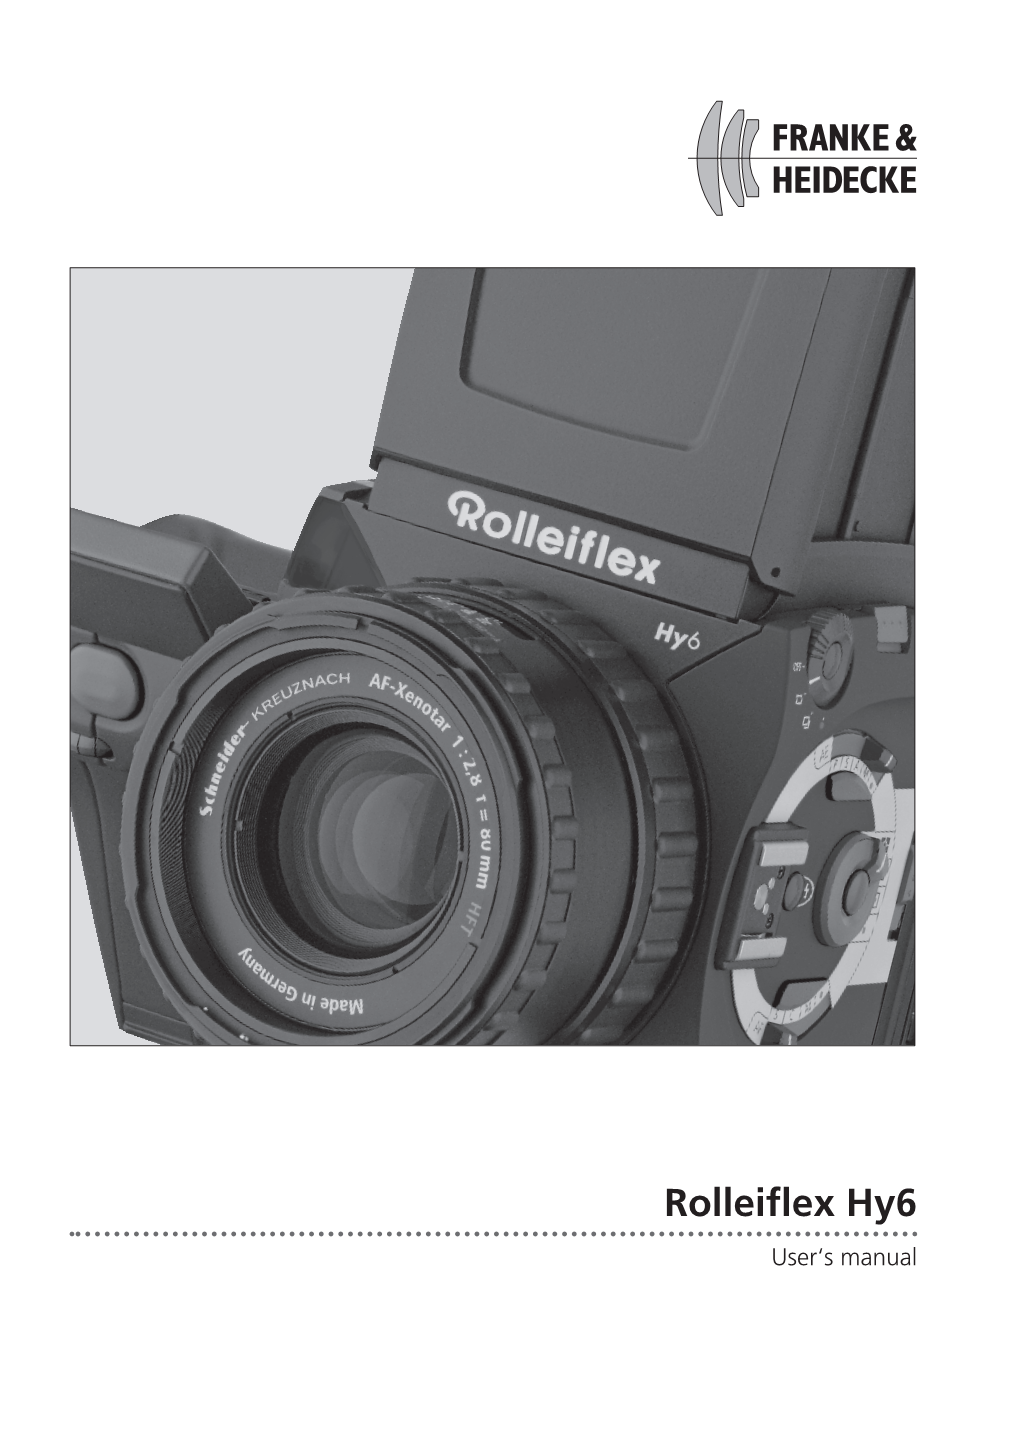 Rolleiflex 6000 / Hy6 System